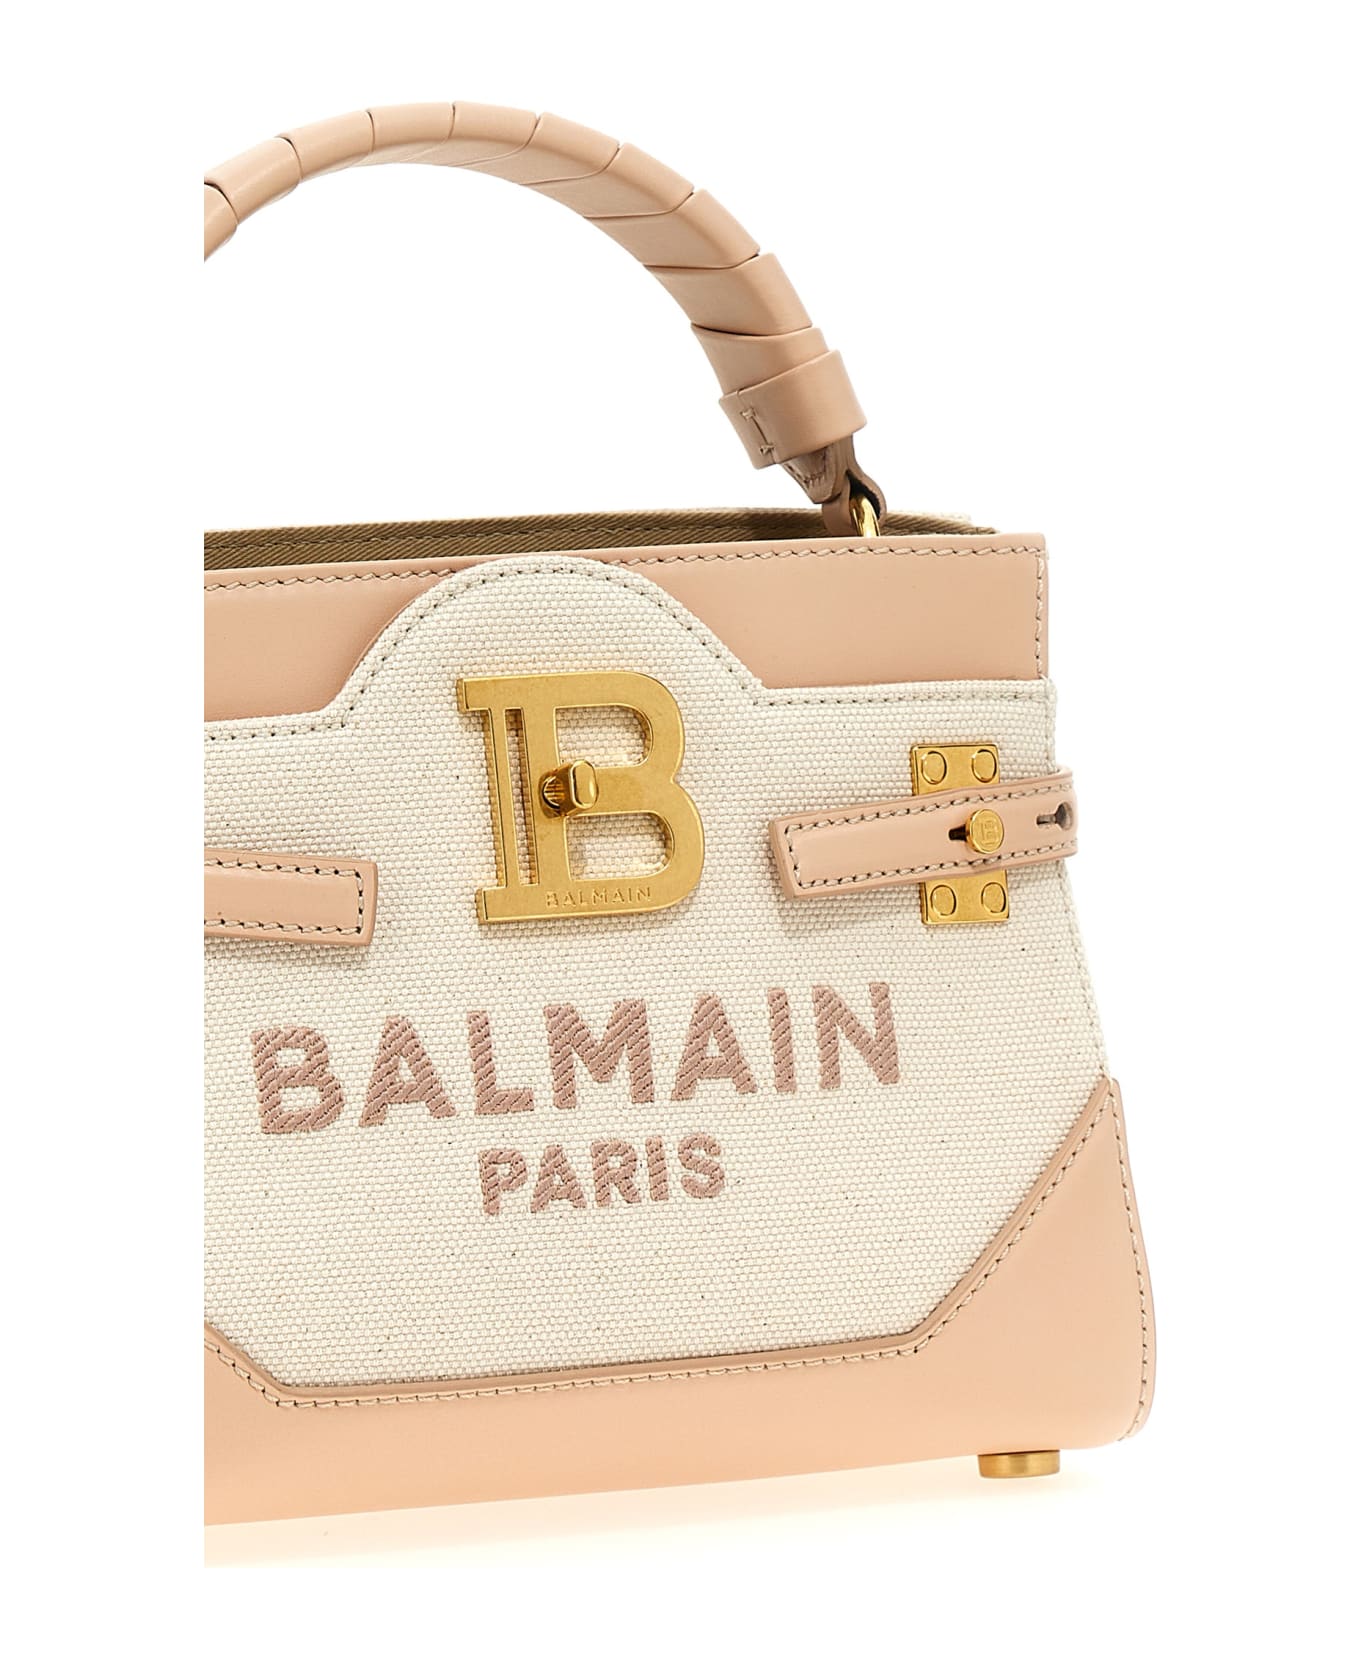 Balmain B-buzz 22 Handbag - Creme/Nude